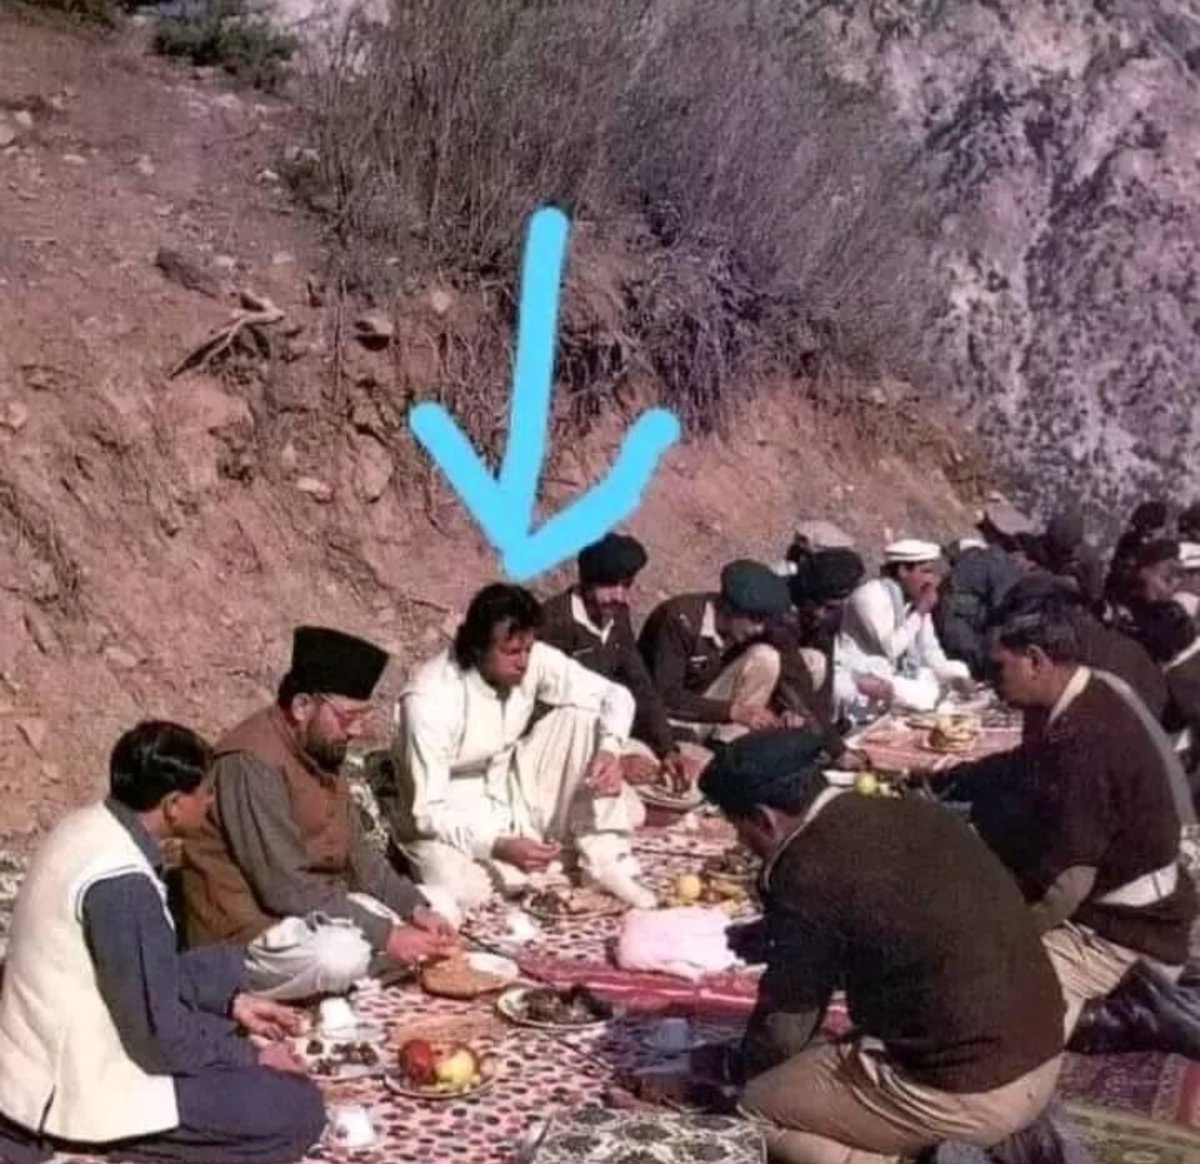 خان صاحب کی ماضی کی ایک تصویر باڈر کے اوپر نوجوانوں کے ساتھ کھانا کھاتے ہوئے اللہ سلامت رکھے ہمارے لیڈر جناب عمران خان کو اورہمارے نوجوانوں کو جو سرحدوں کا دفاع کرنے کے لیے 24 گھنٹے تیار ہیں.
اور یہ شیطان صفت لوگ 1 درویش سے پنگا لیے بیٹھے۔#فوج_بھی_میری_ملک_بھی_میرا